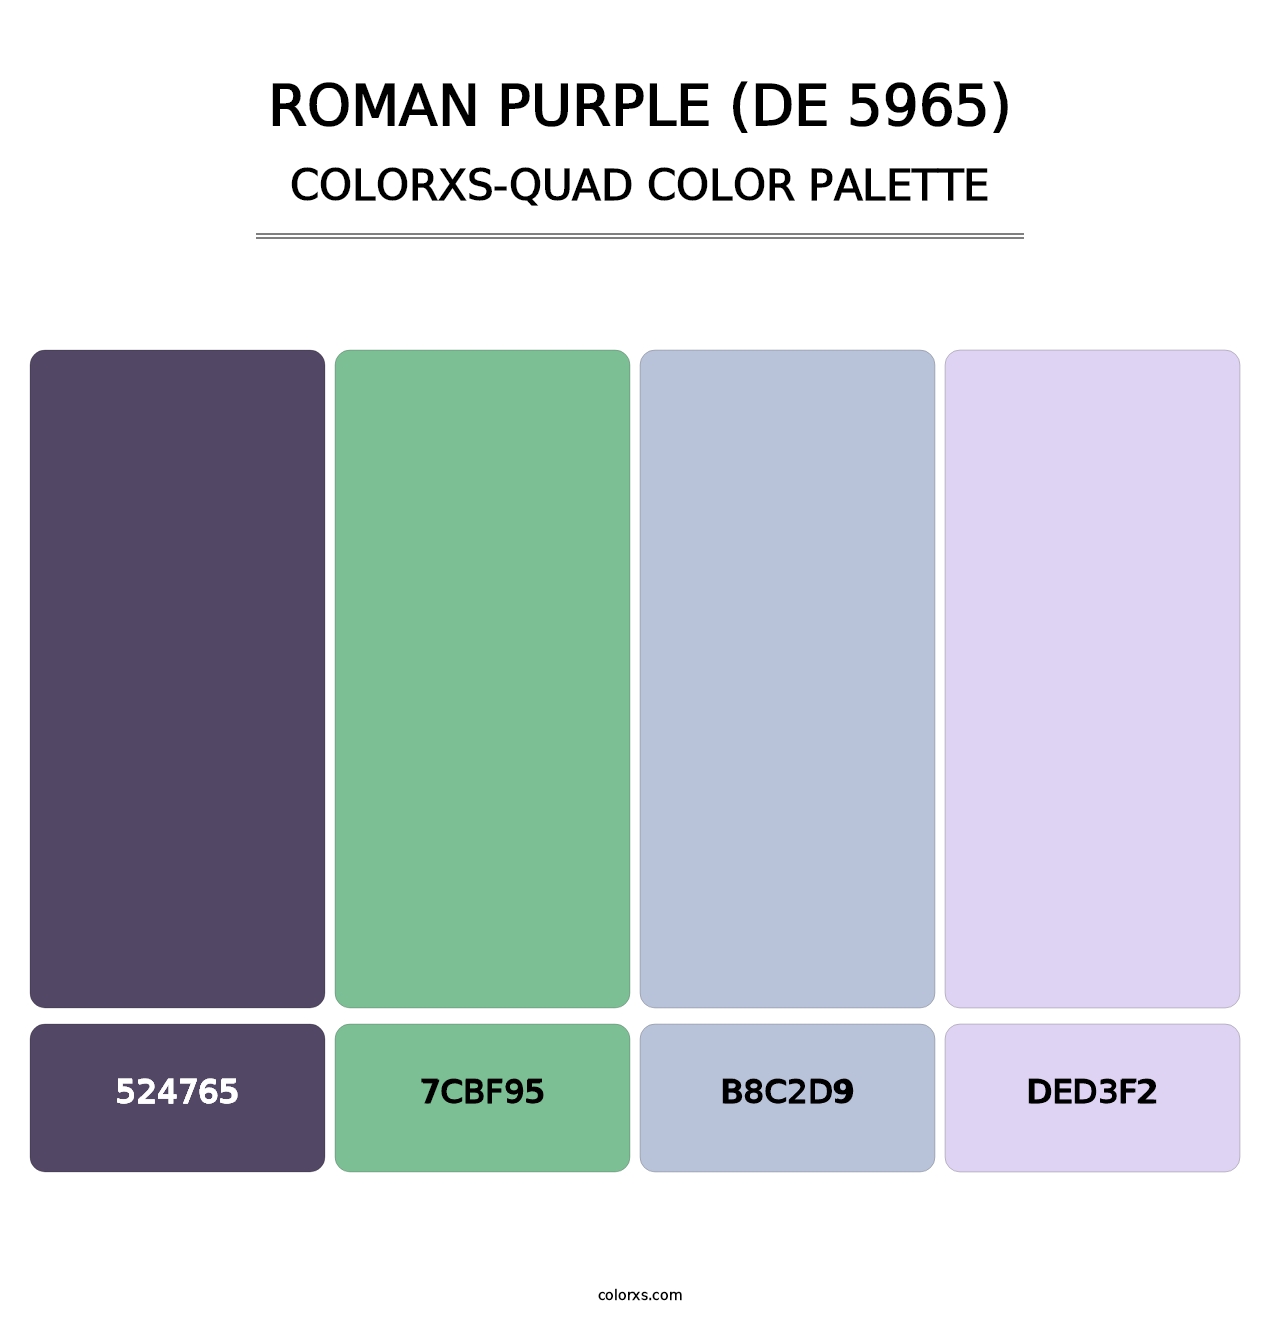 Roman Purple (DE 5965) - Colorxs Quad Palette